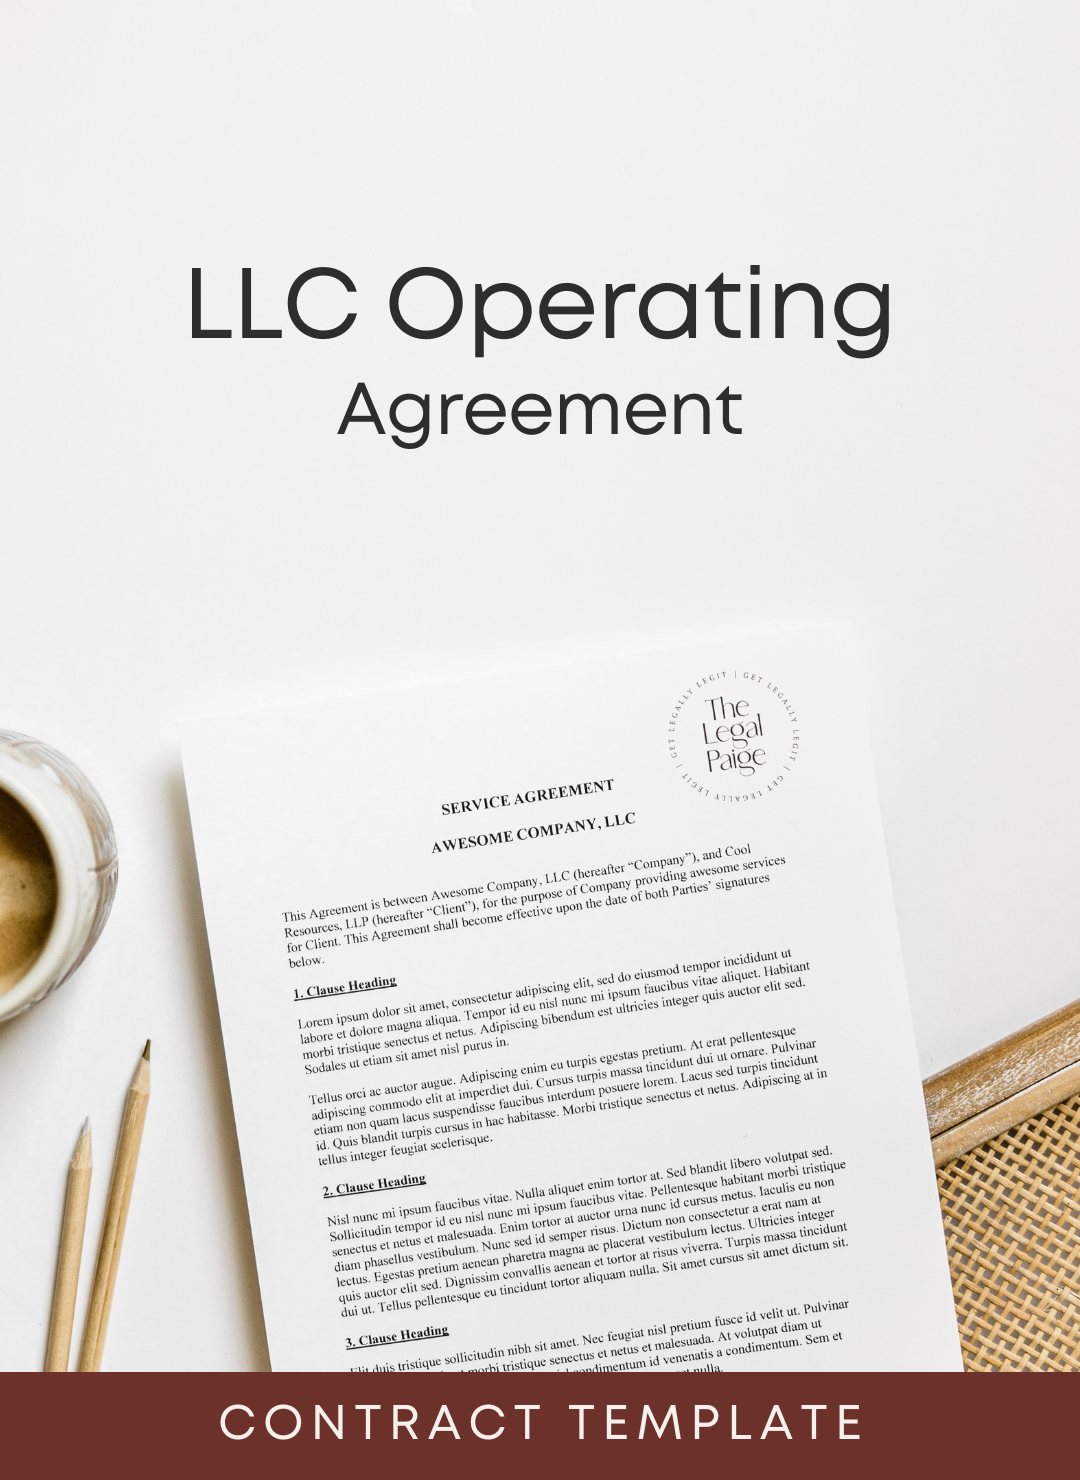 Product - LLCs - LLC Operating Agreement